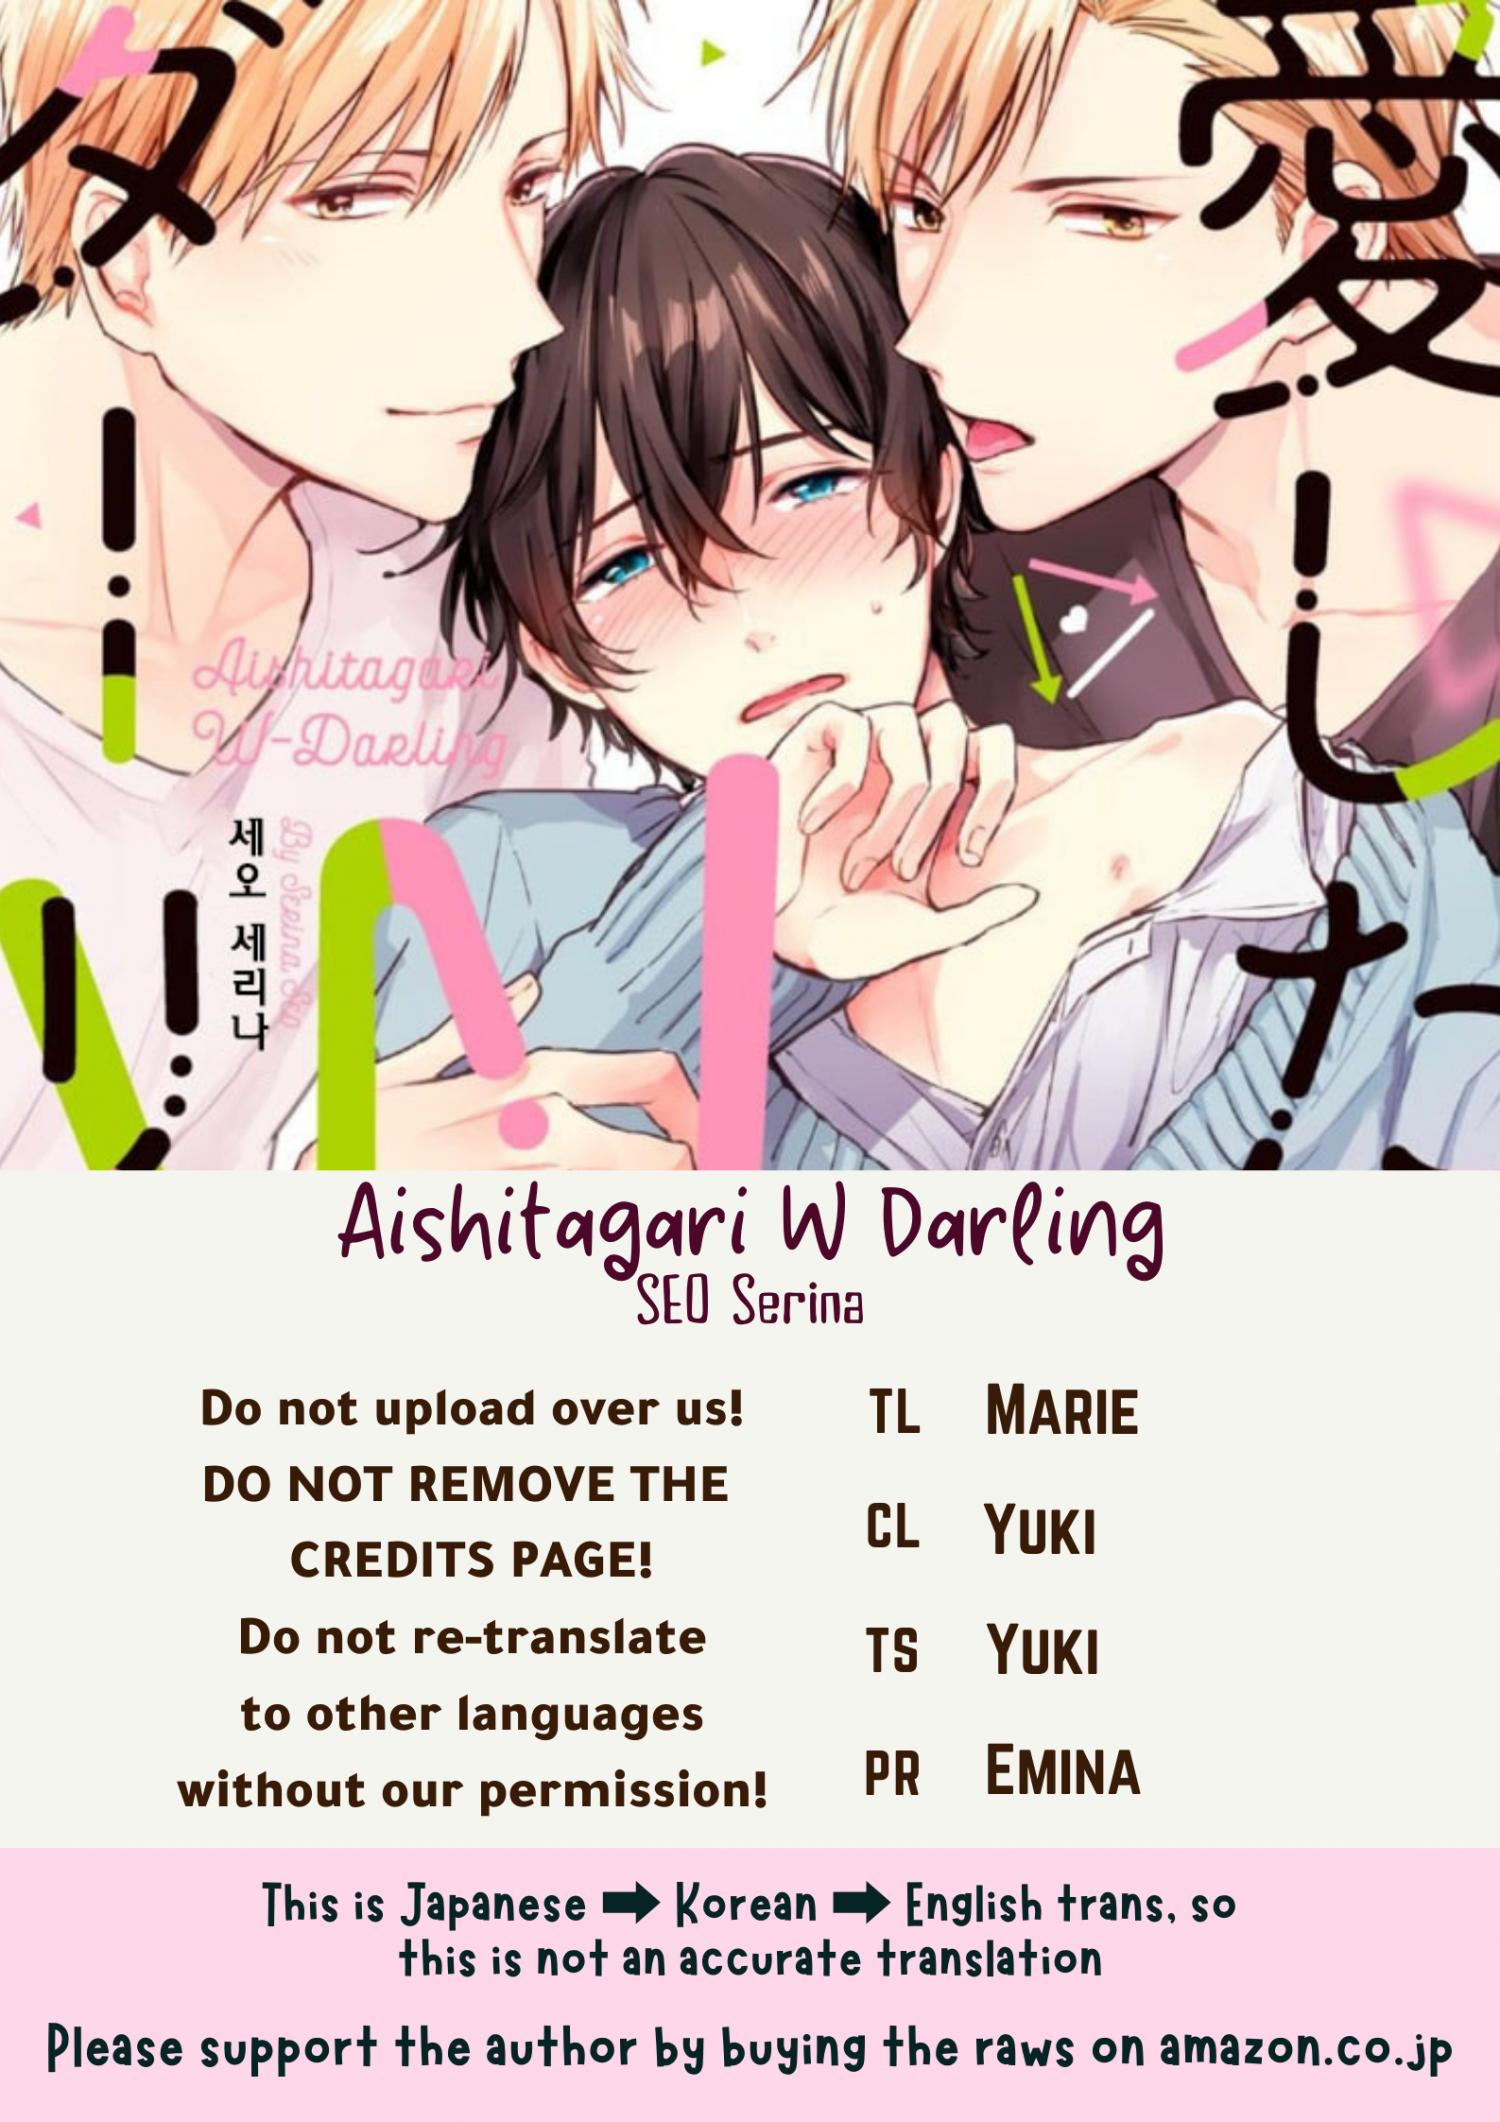 Aishitagari w darling